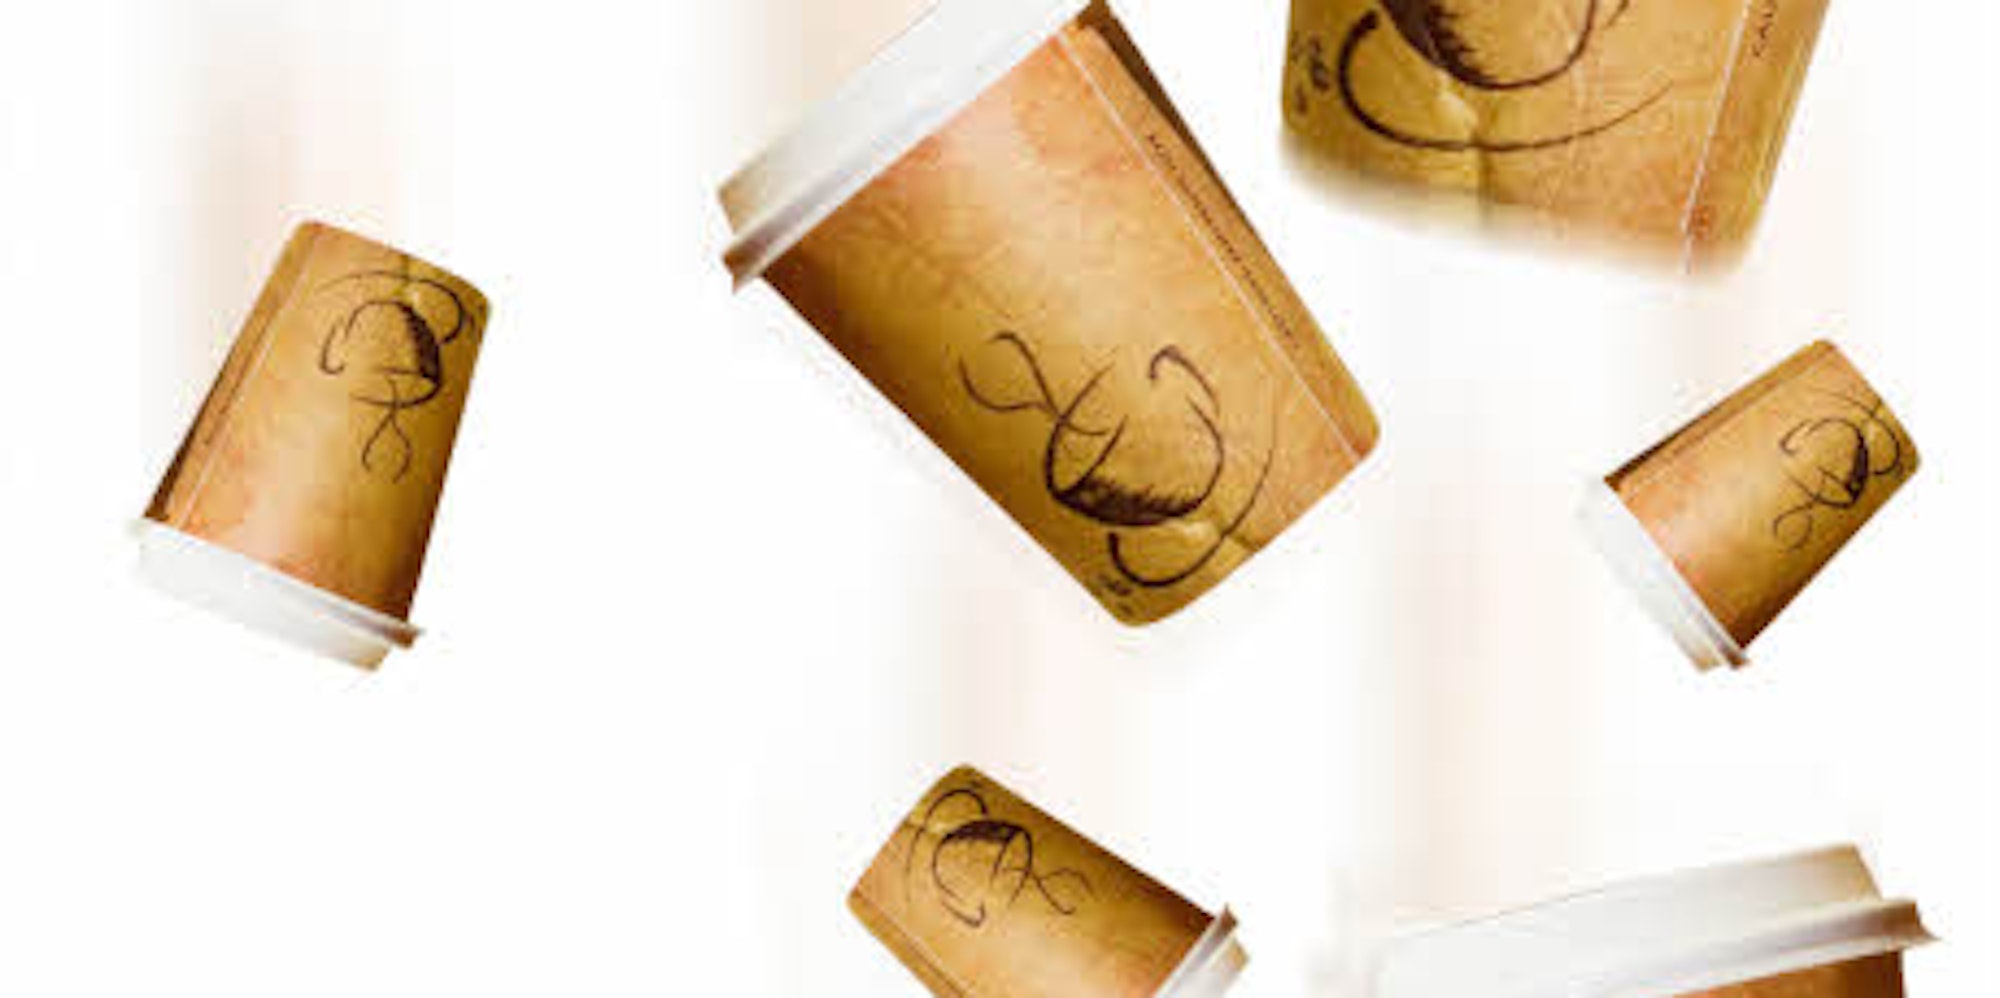 IHK und Stadtverwaltung haben eine Initiative gegen Plastikgefäße für Kaffee ins Leben gerufen. 